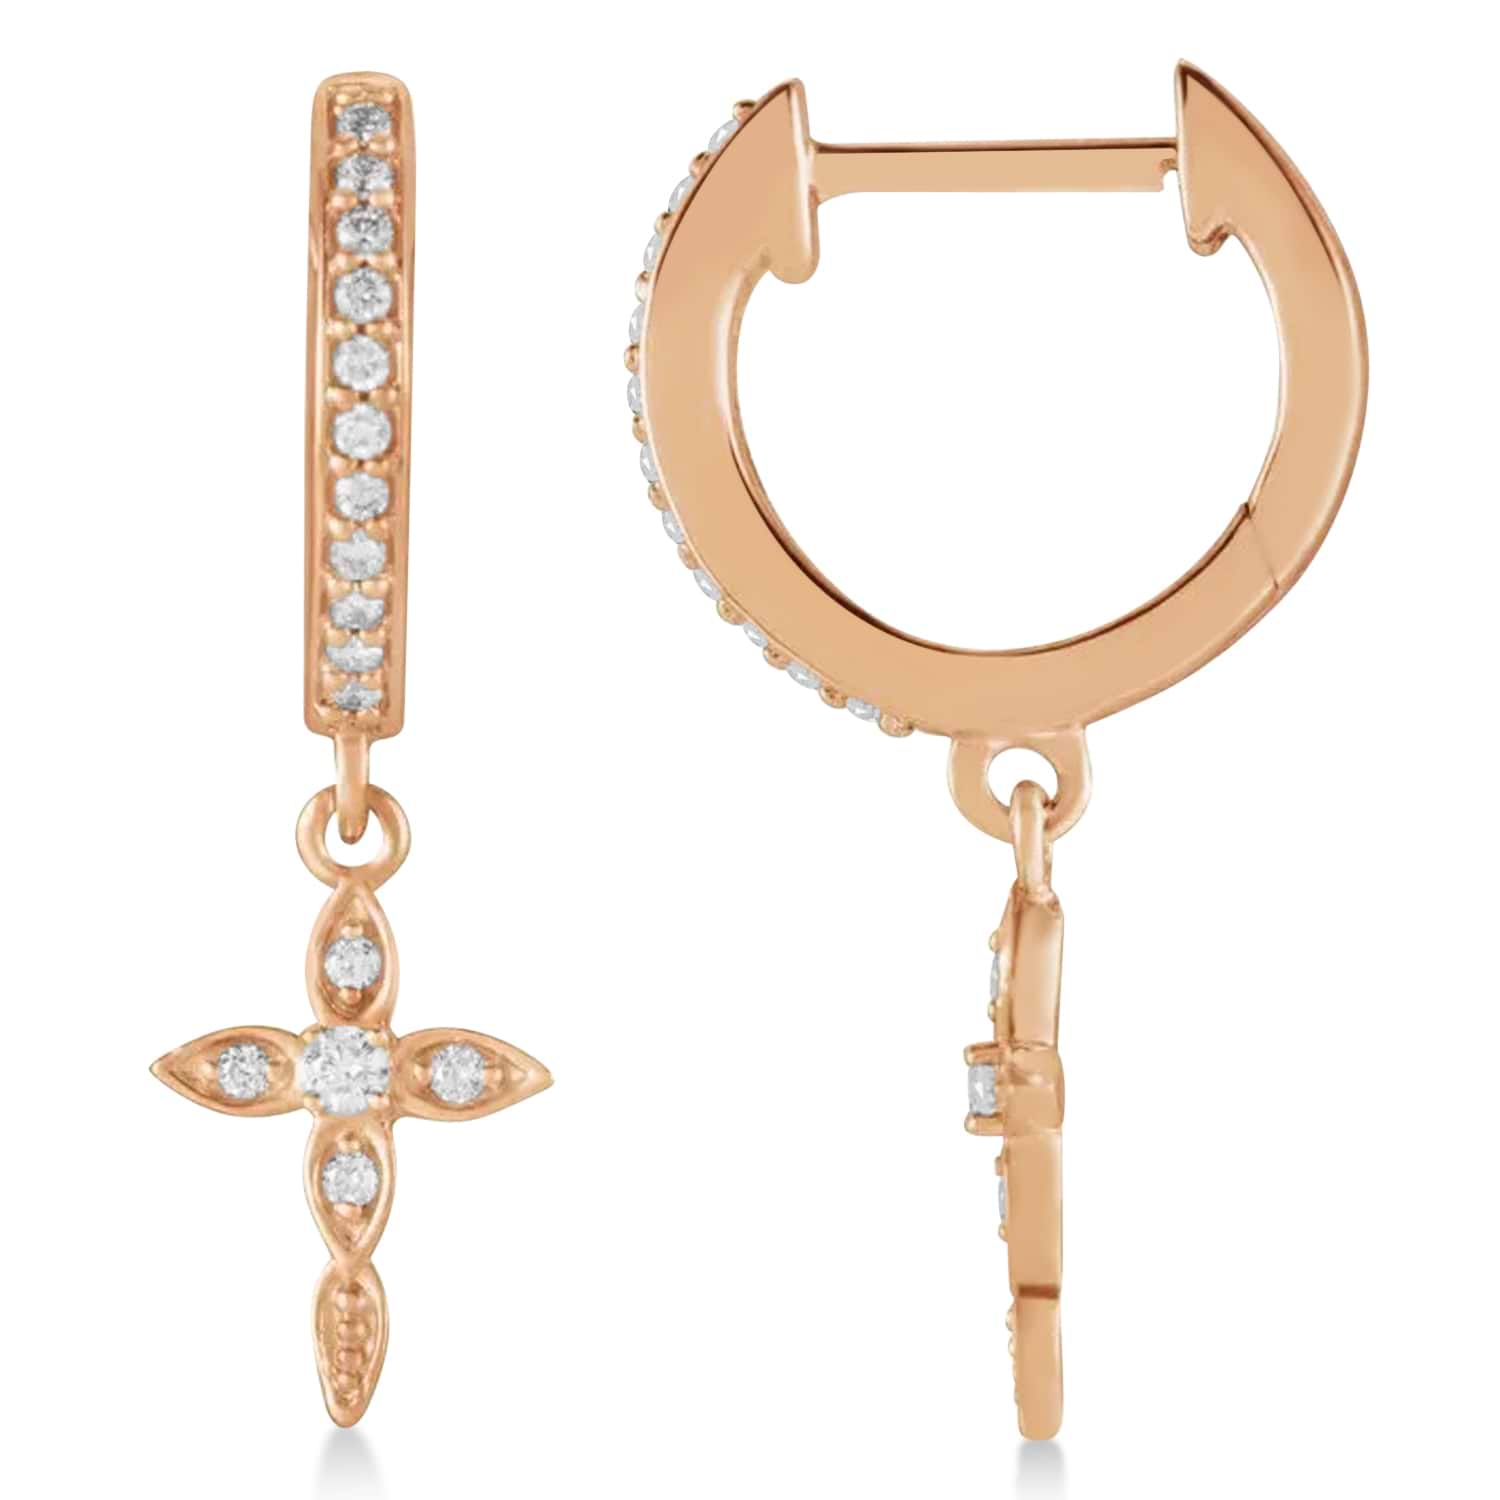 Diamond Cross Hinged Hoop Earrings 14k Rose Gold (0.13ct)